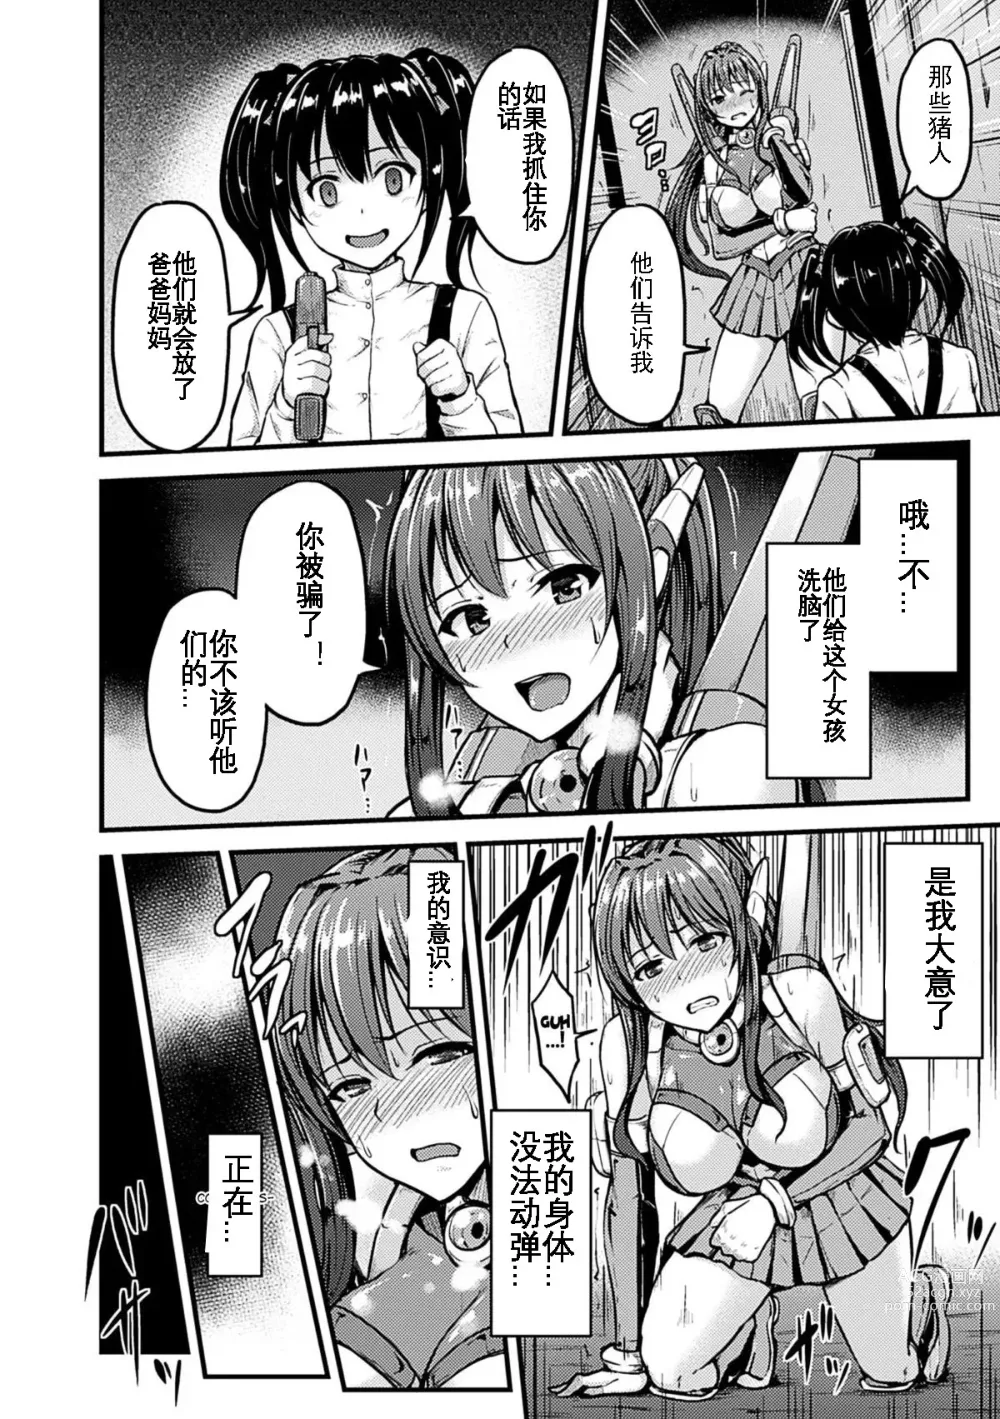 Page 5 of manga Irisraker Buta no Ko o Haramu Seigi no Senshi